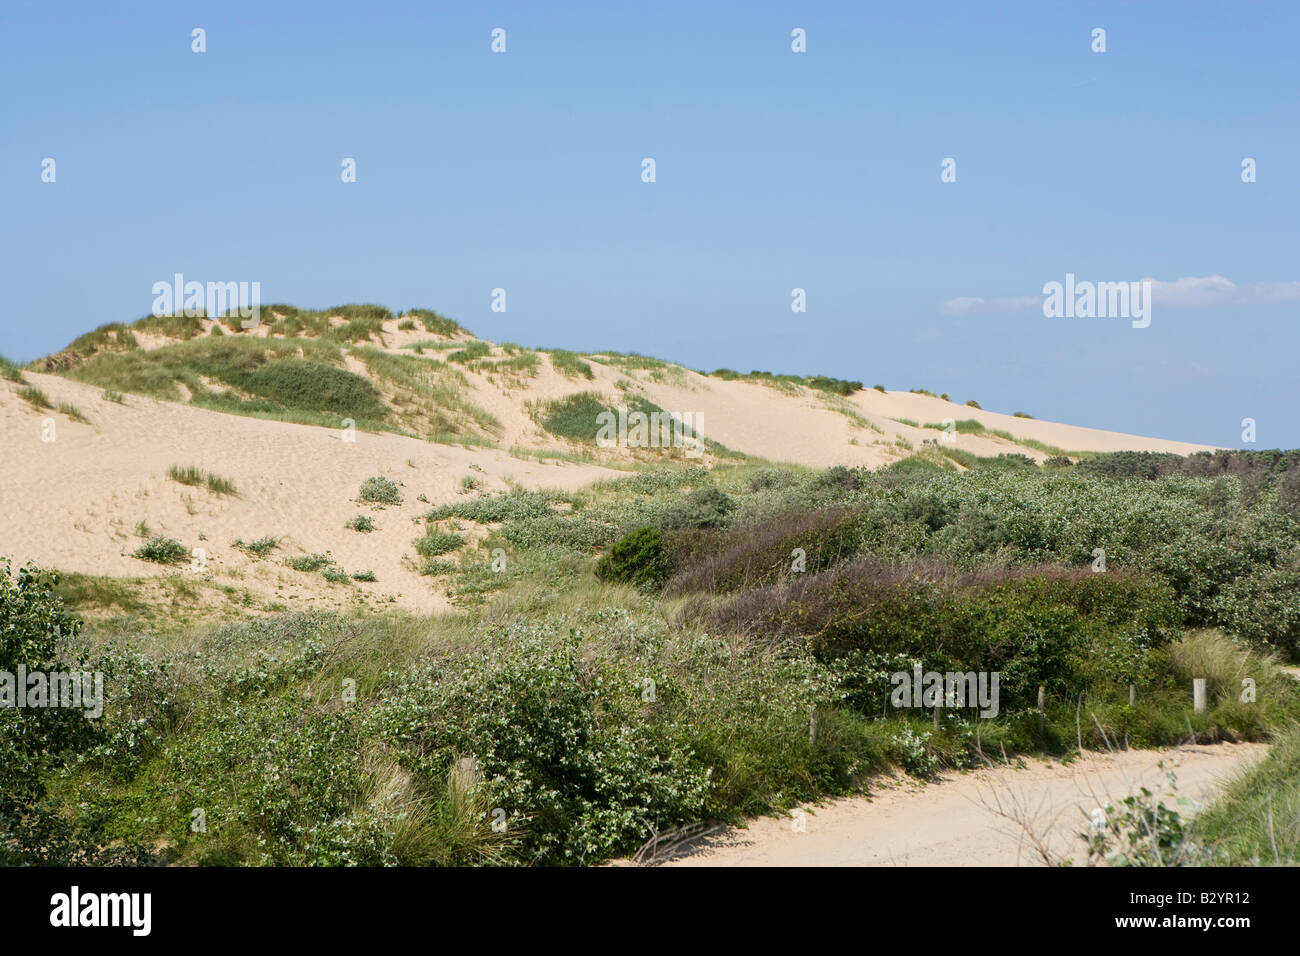 Large sand dunes at Formby, merseyside, UK Stock Photo